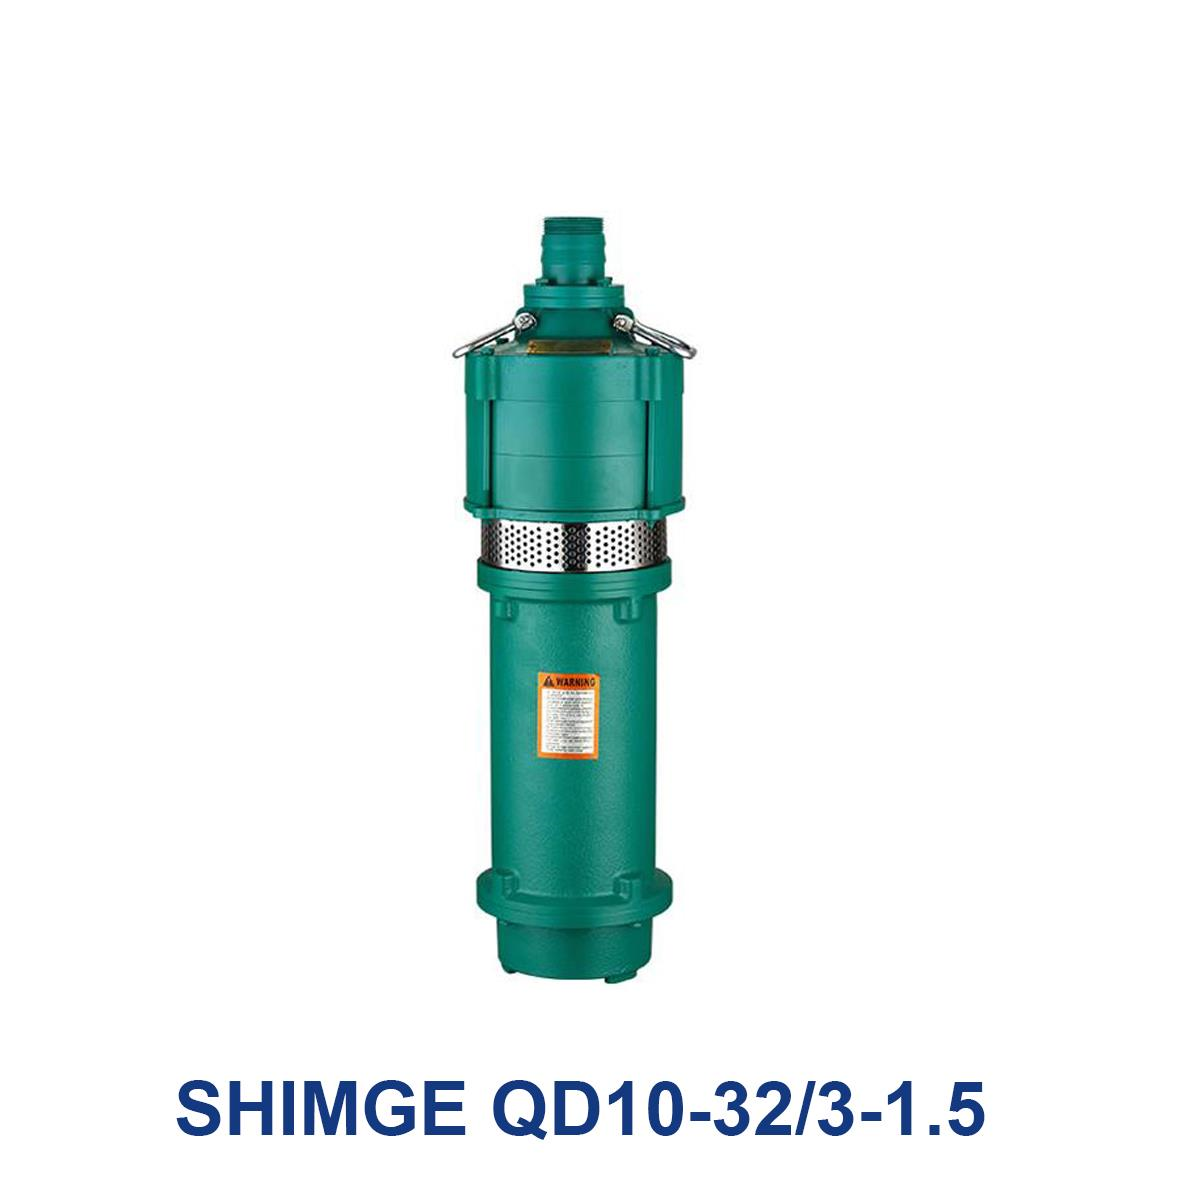 SHIMGE-QD10-32_3-1.5